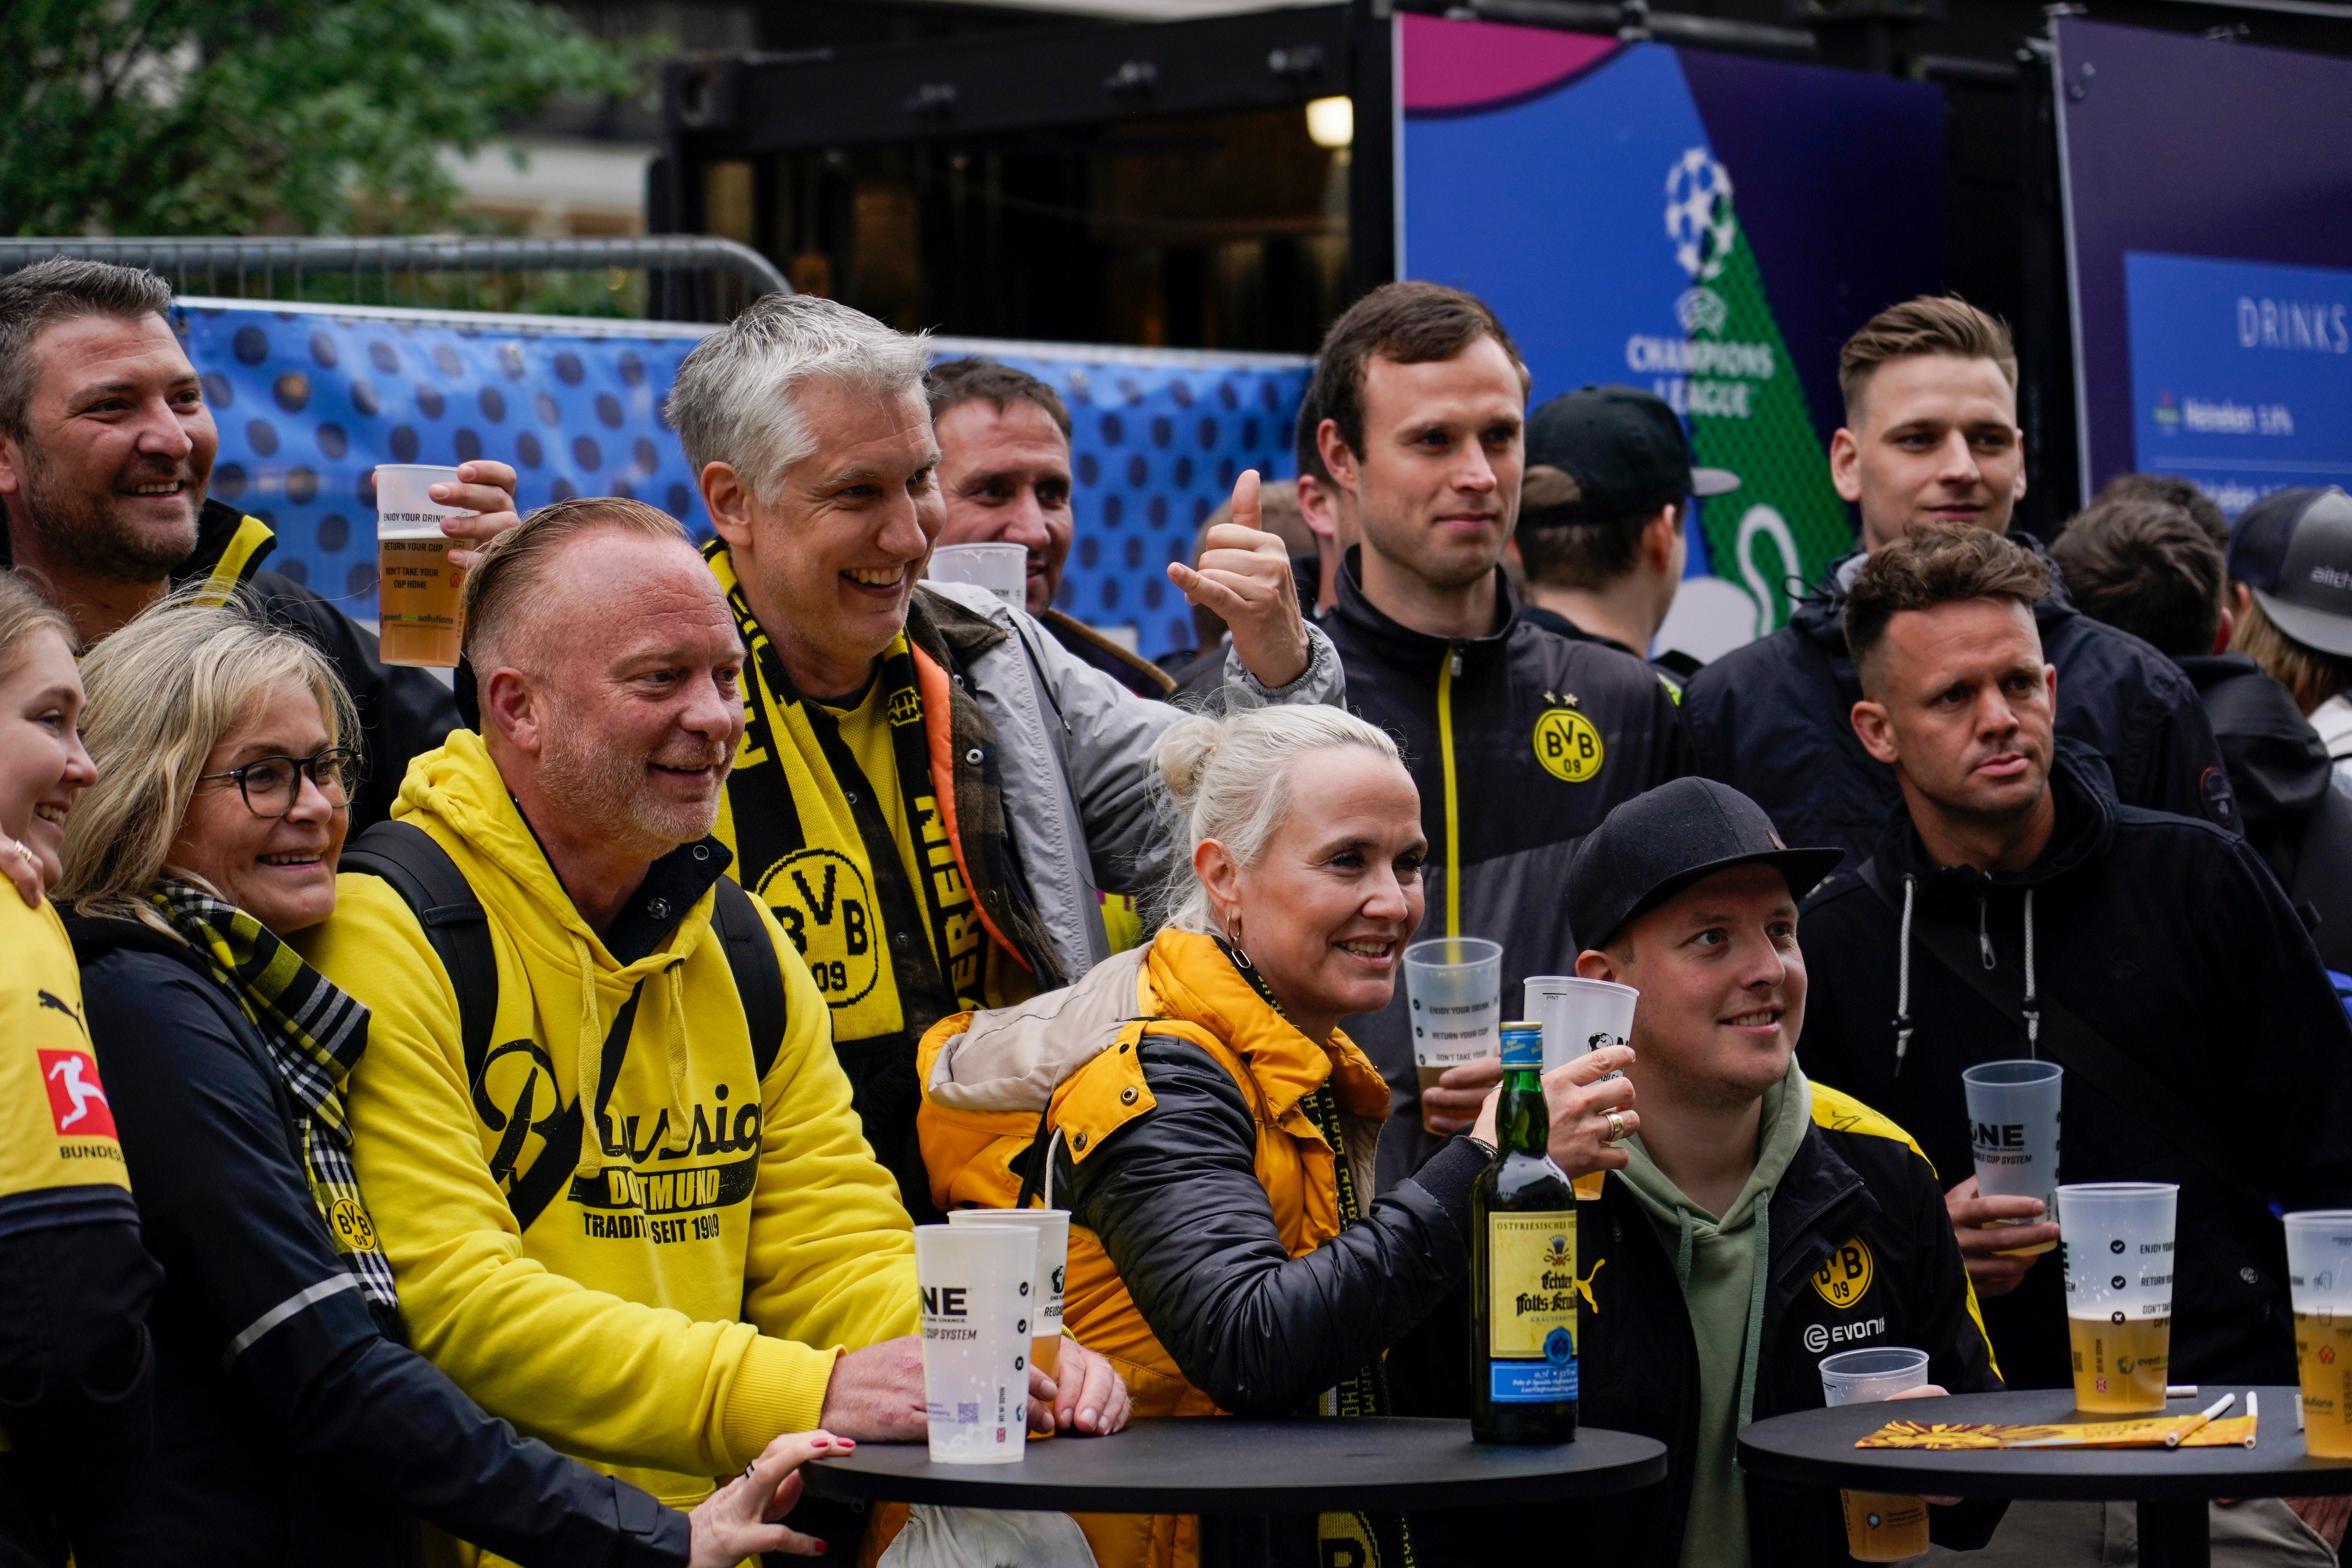 Borussia Dortmund fans gather in Wembley Stadium